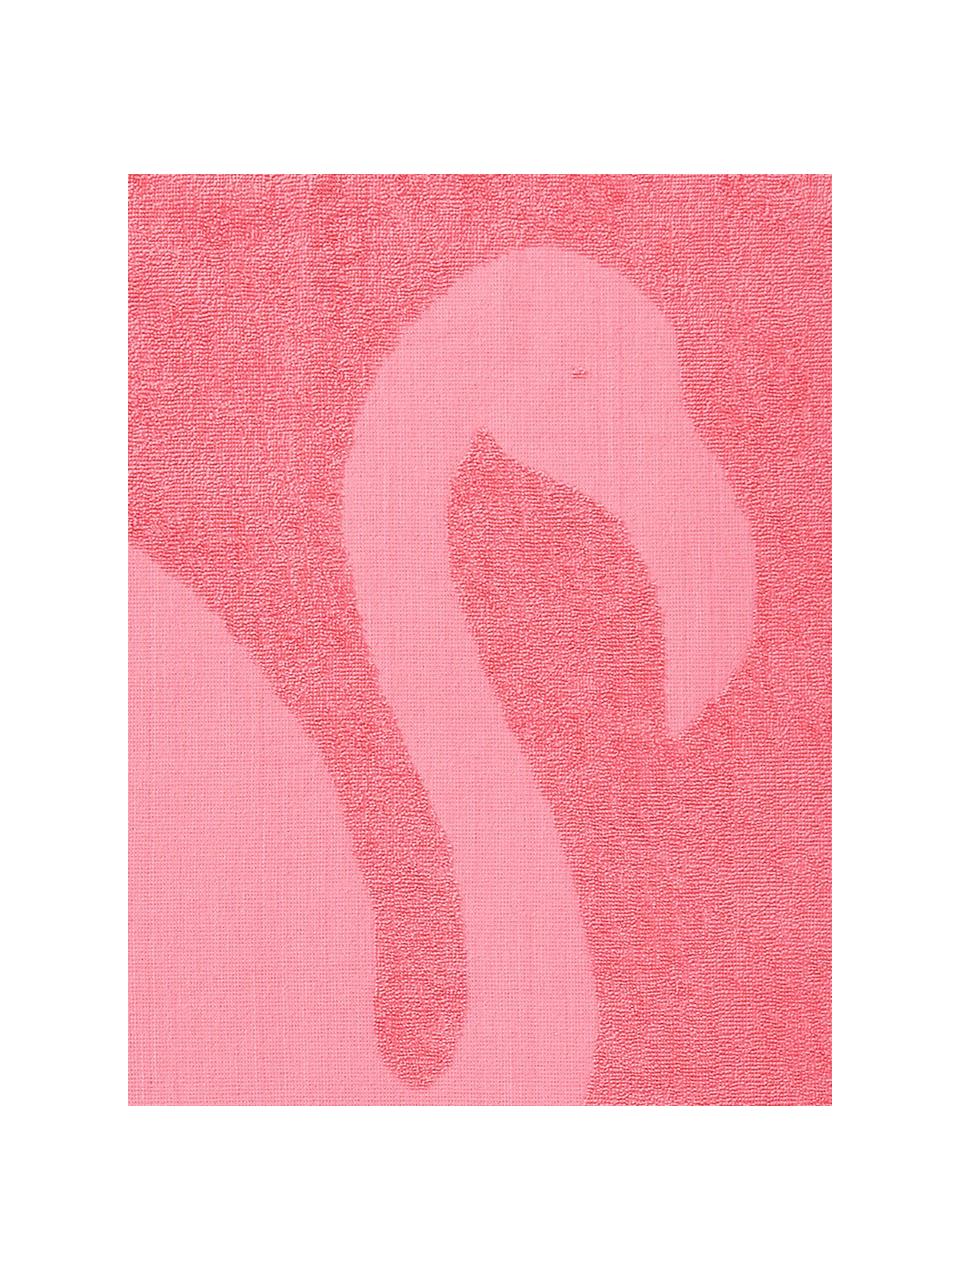 Ręcznik plażowy Capri Flamingo, Blady różowy, S 90 x D 160 cm